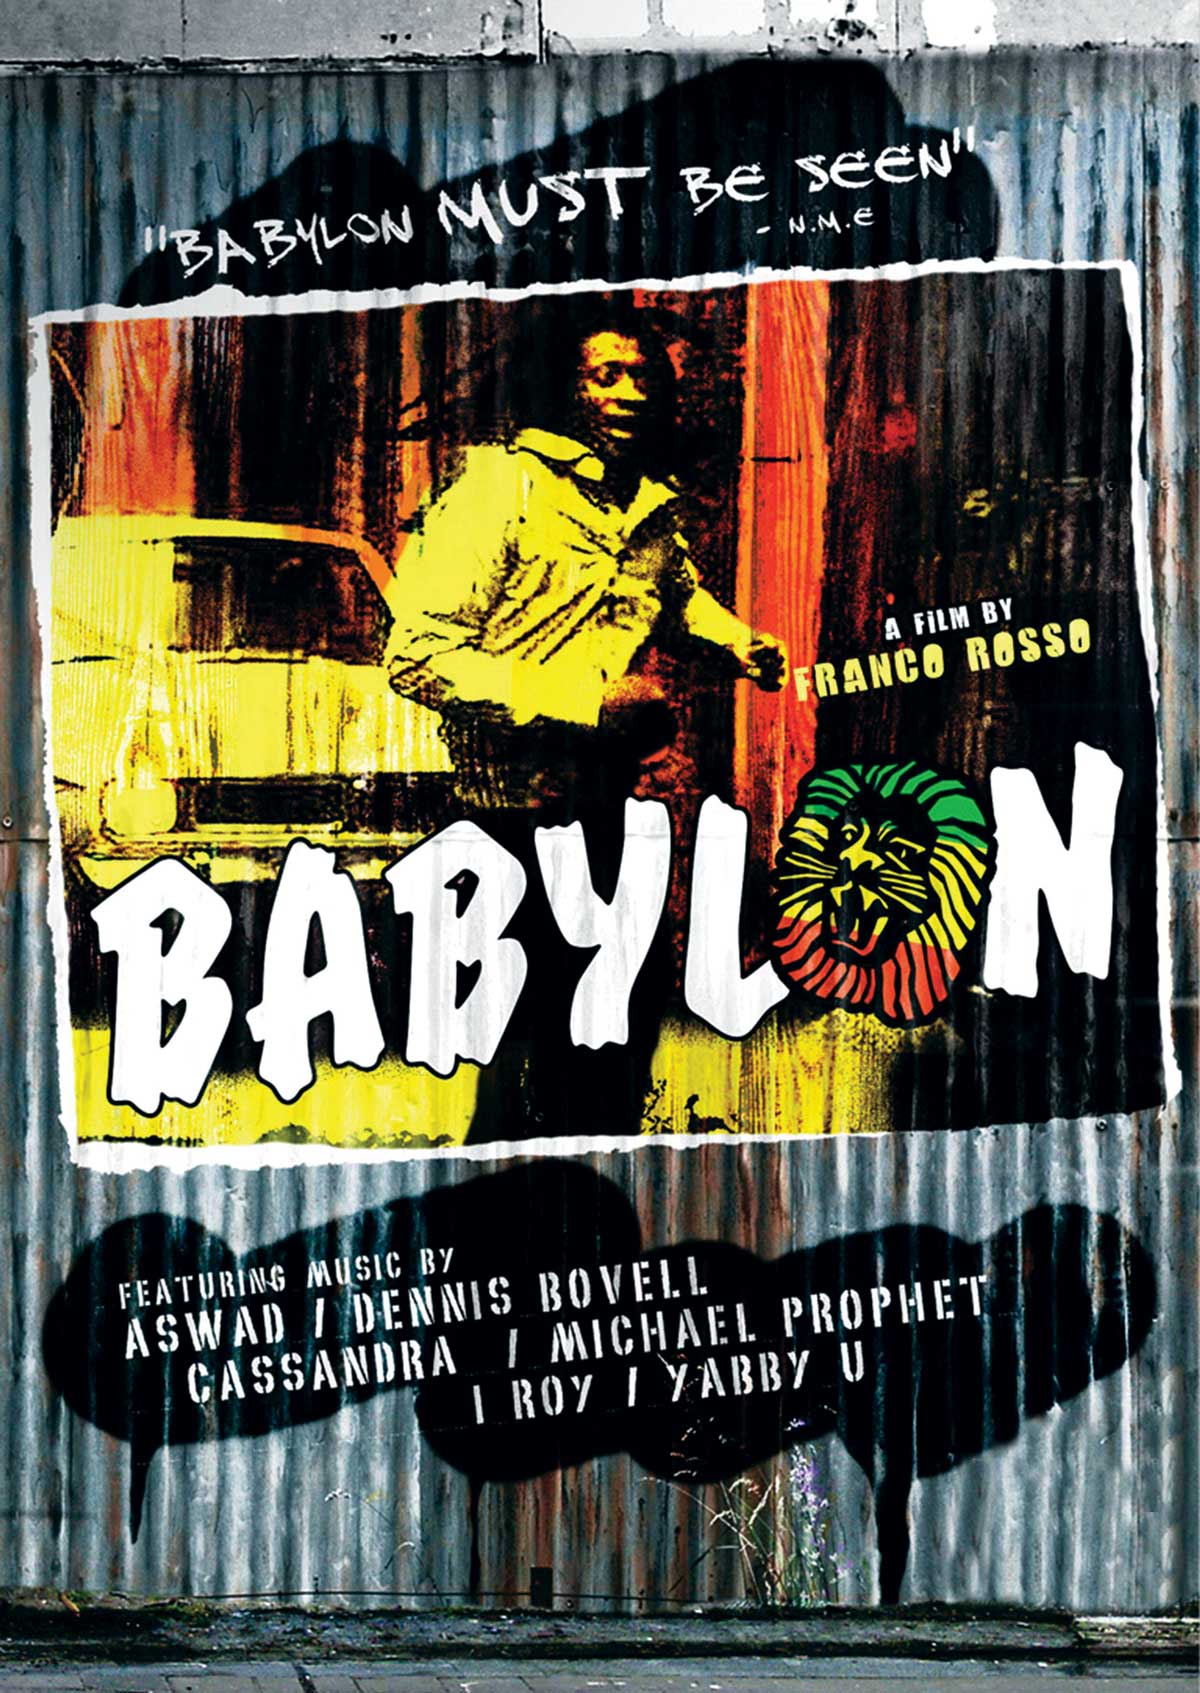 Babylon 2